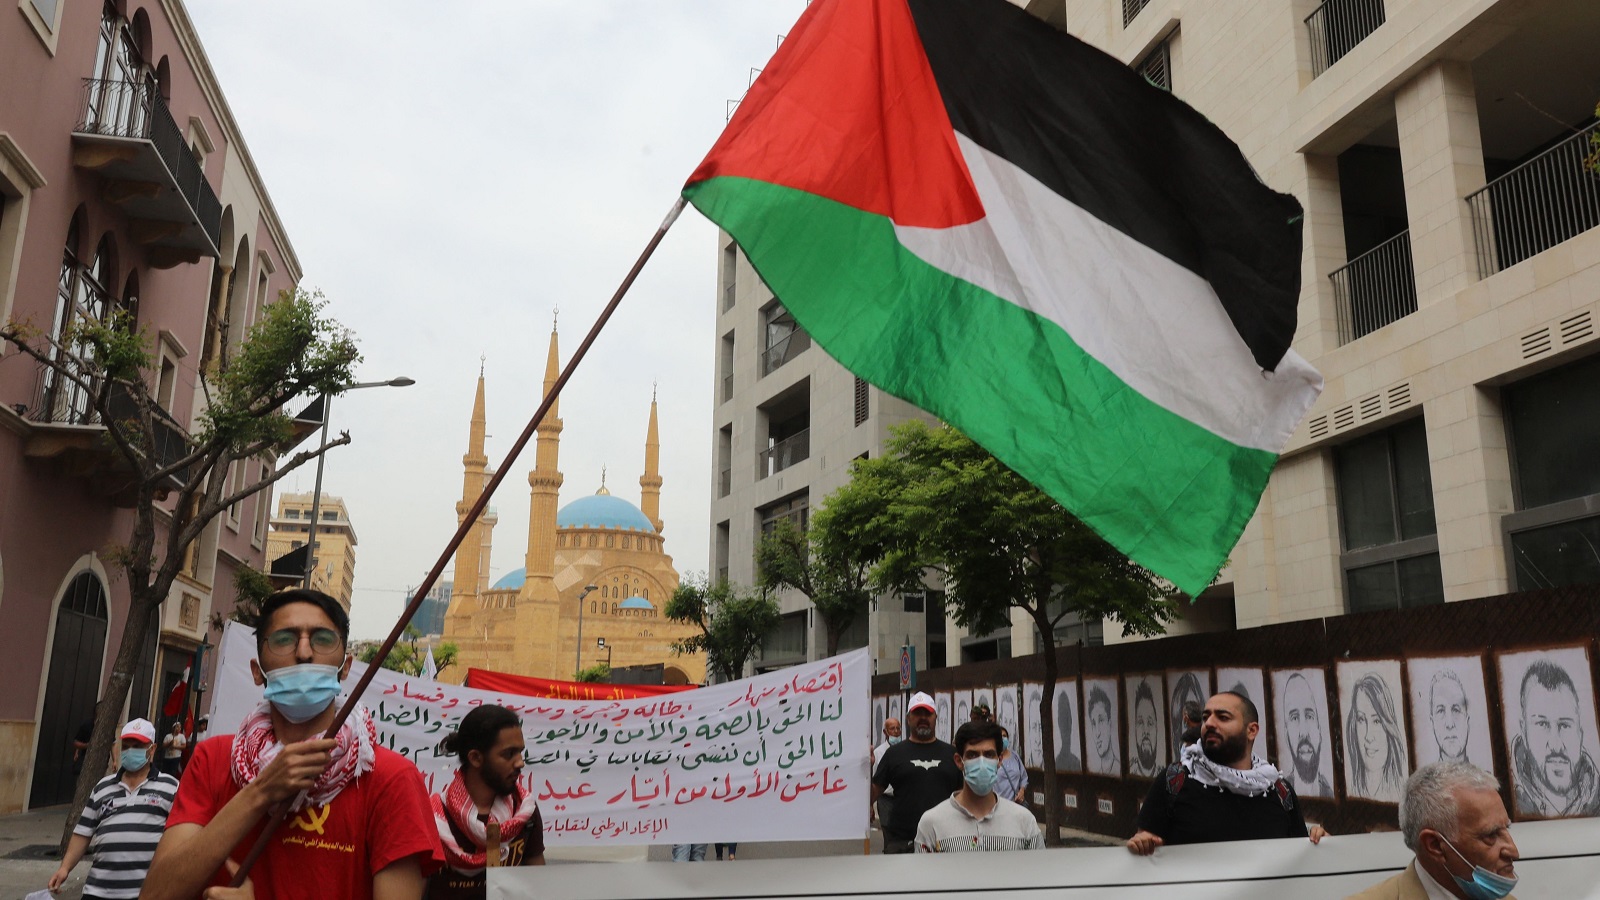 انتفاضة القدس في النقاش اللبناني: "جيوبوليتيك" النظرة إلى الفلسطينيين